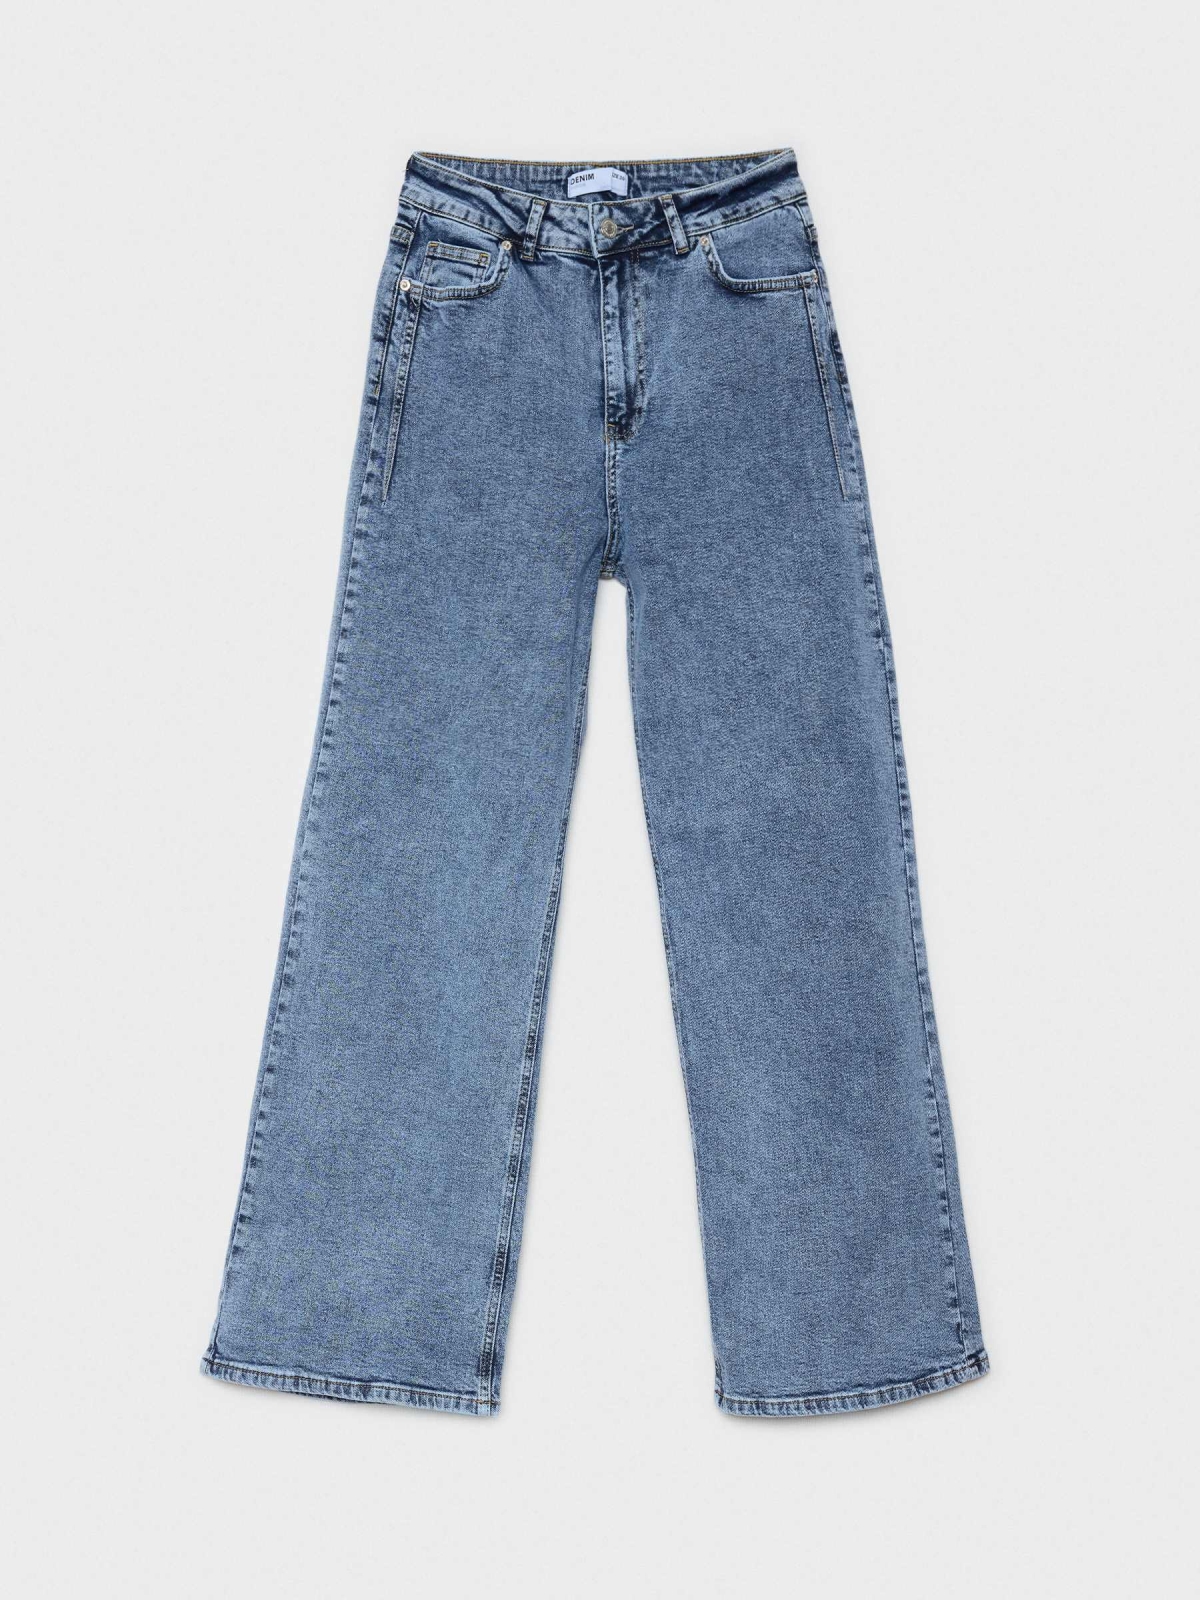 Washed blue wide leg jeans | Women's Jeans | INSIDE